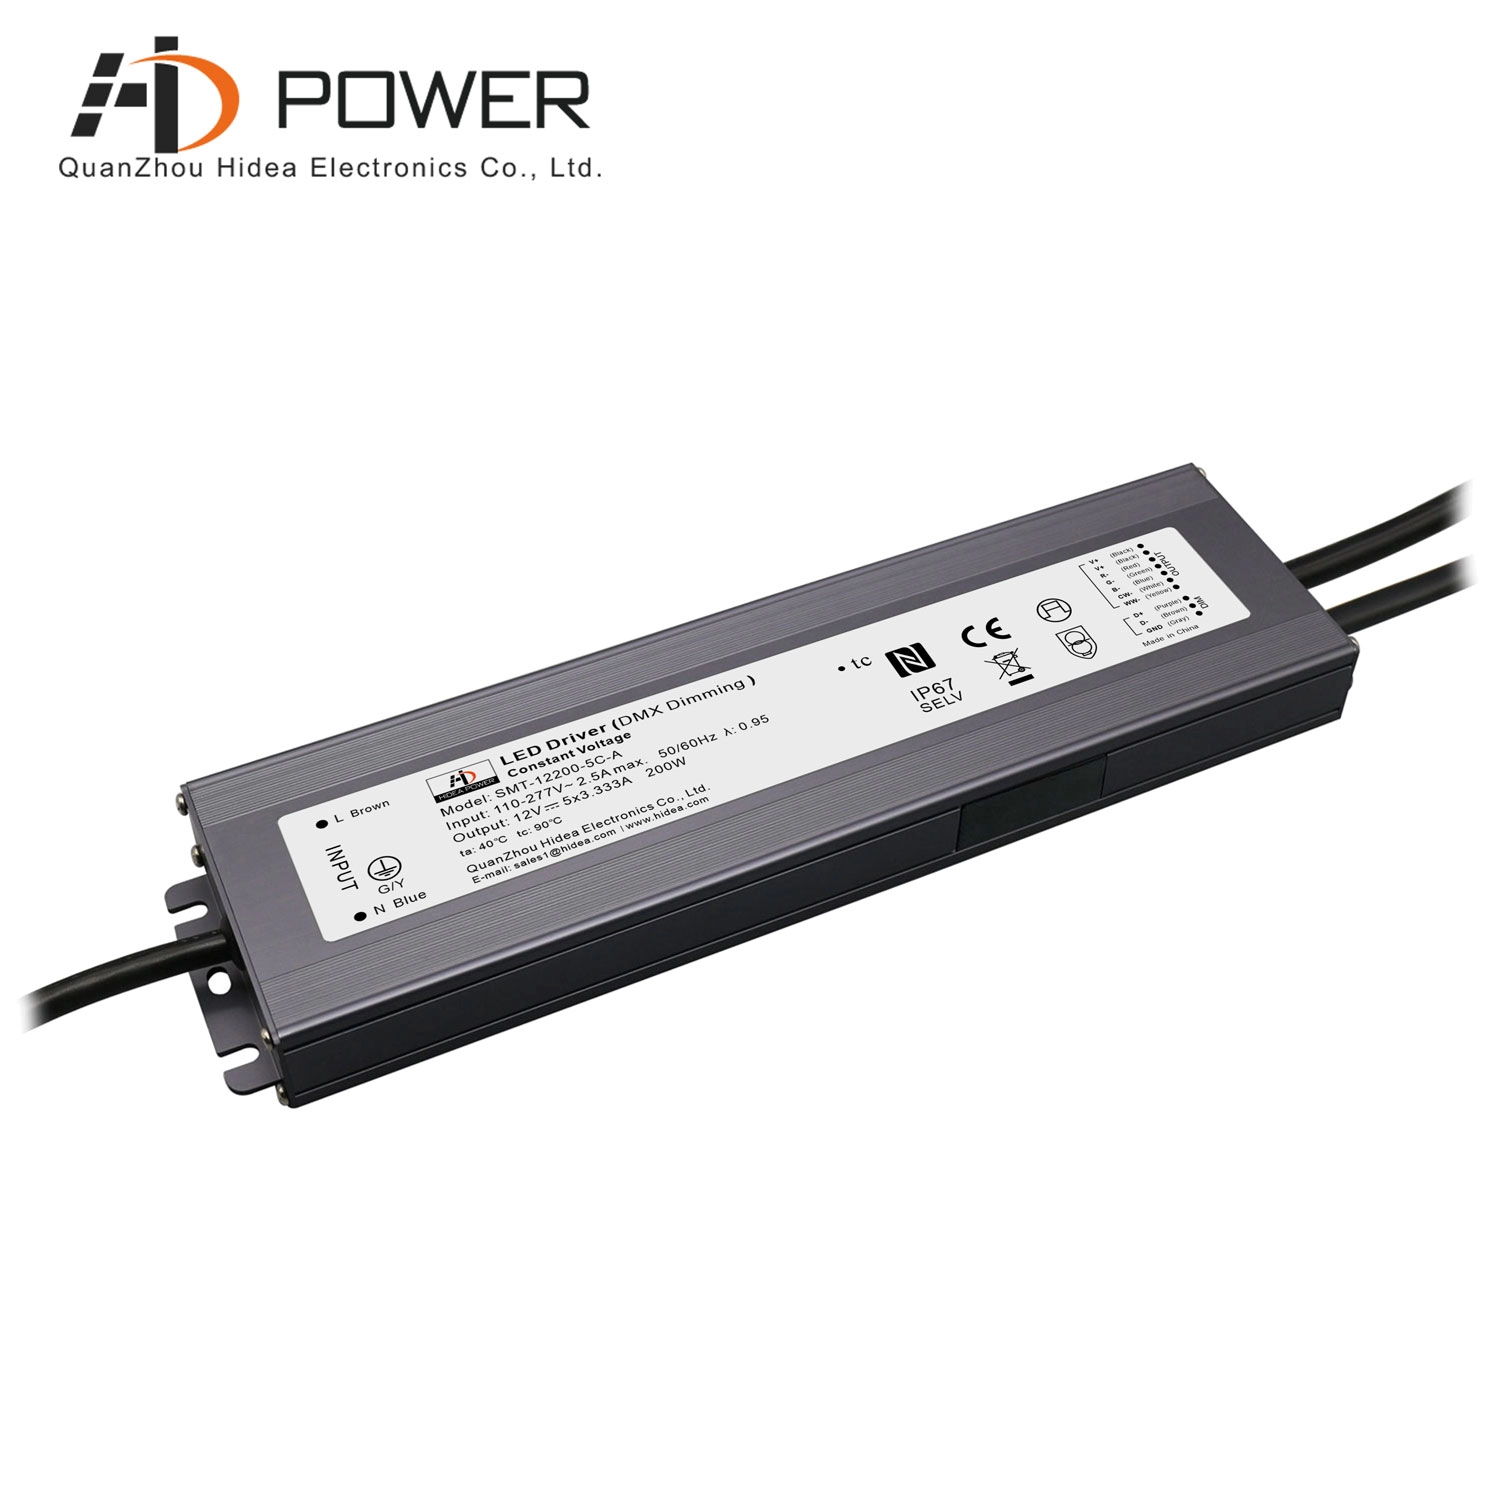 Transformateur dimmable DMX led 200w 12 volts pour RGBCW